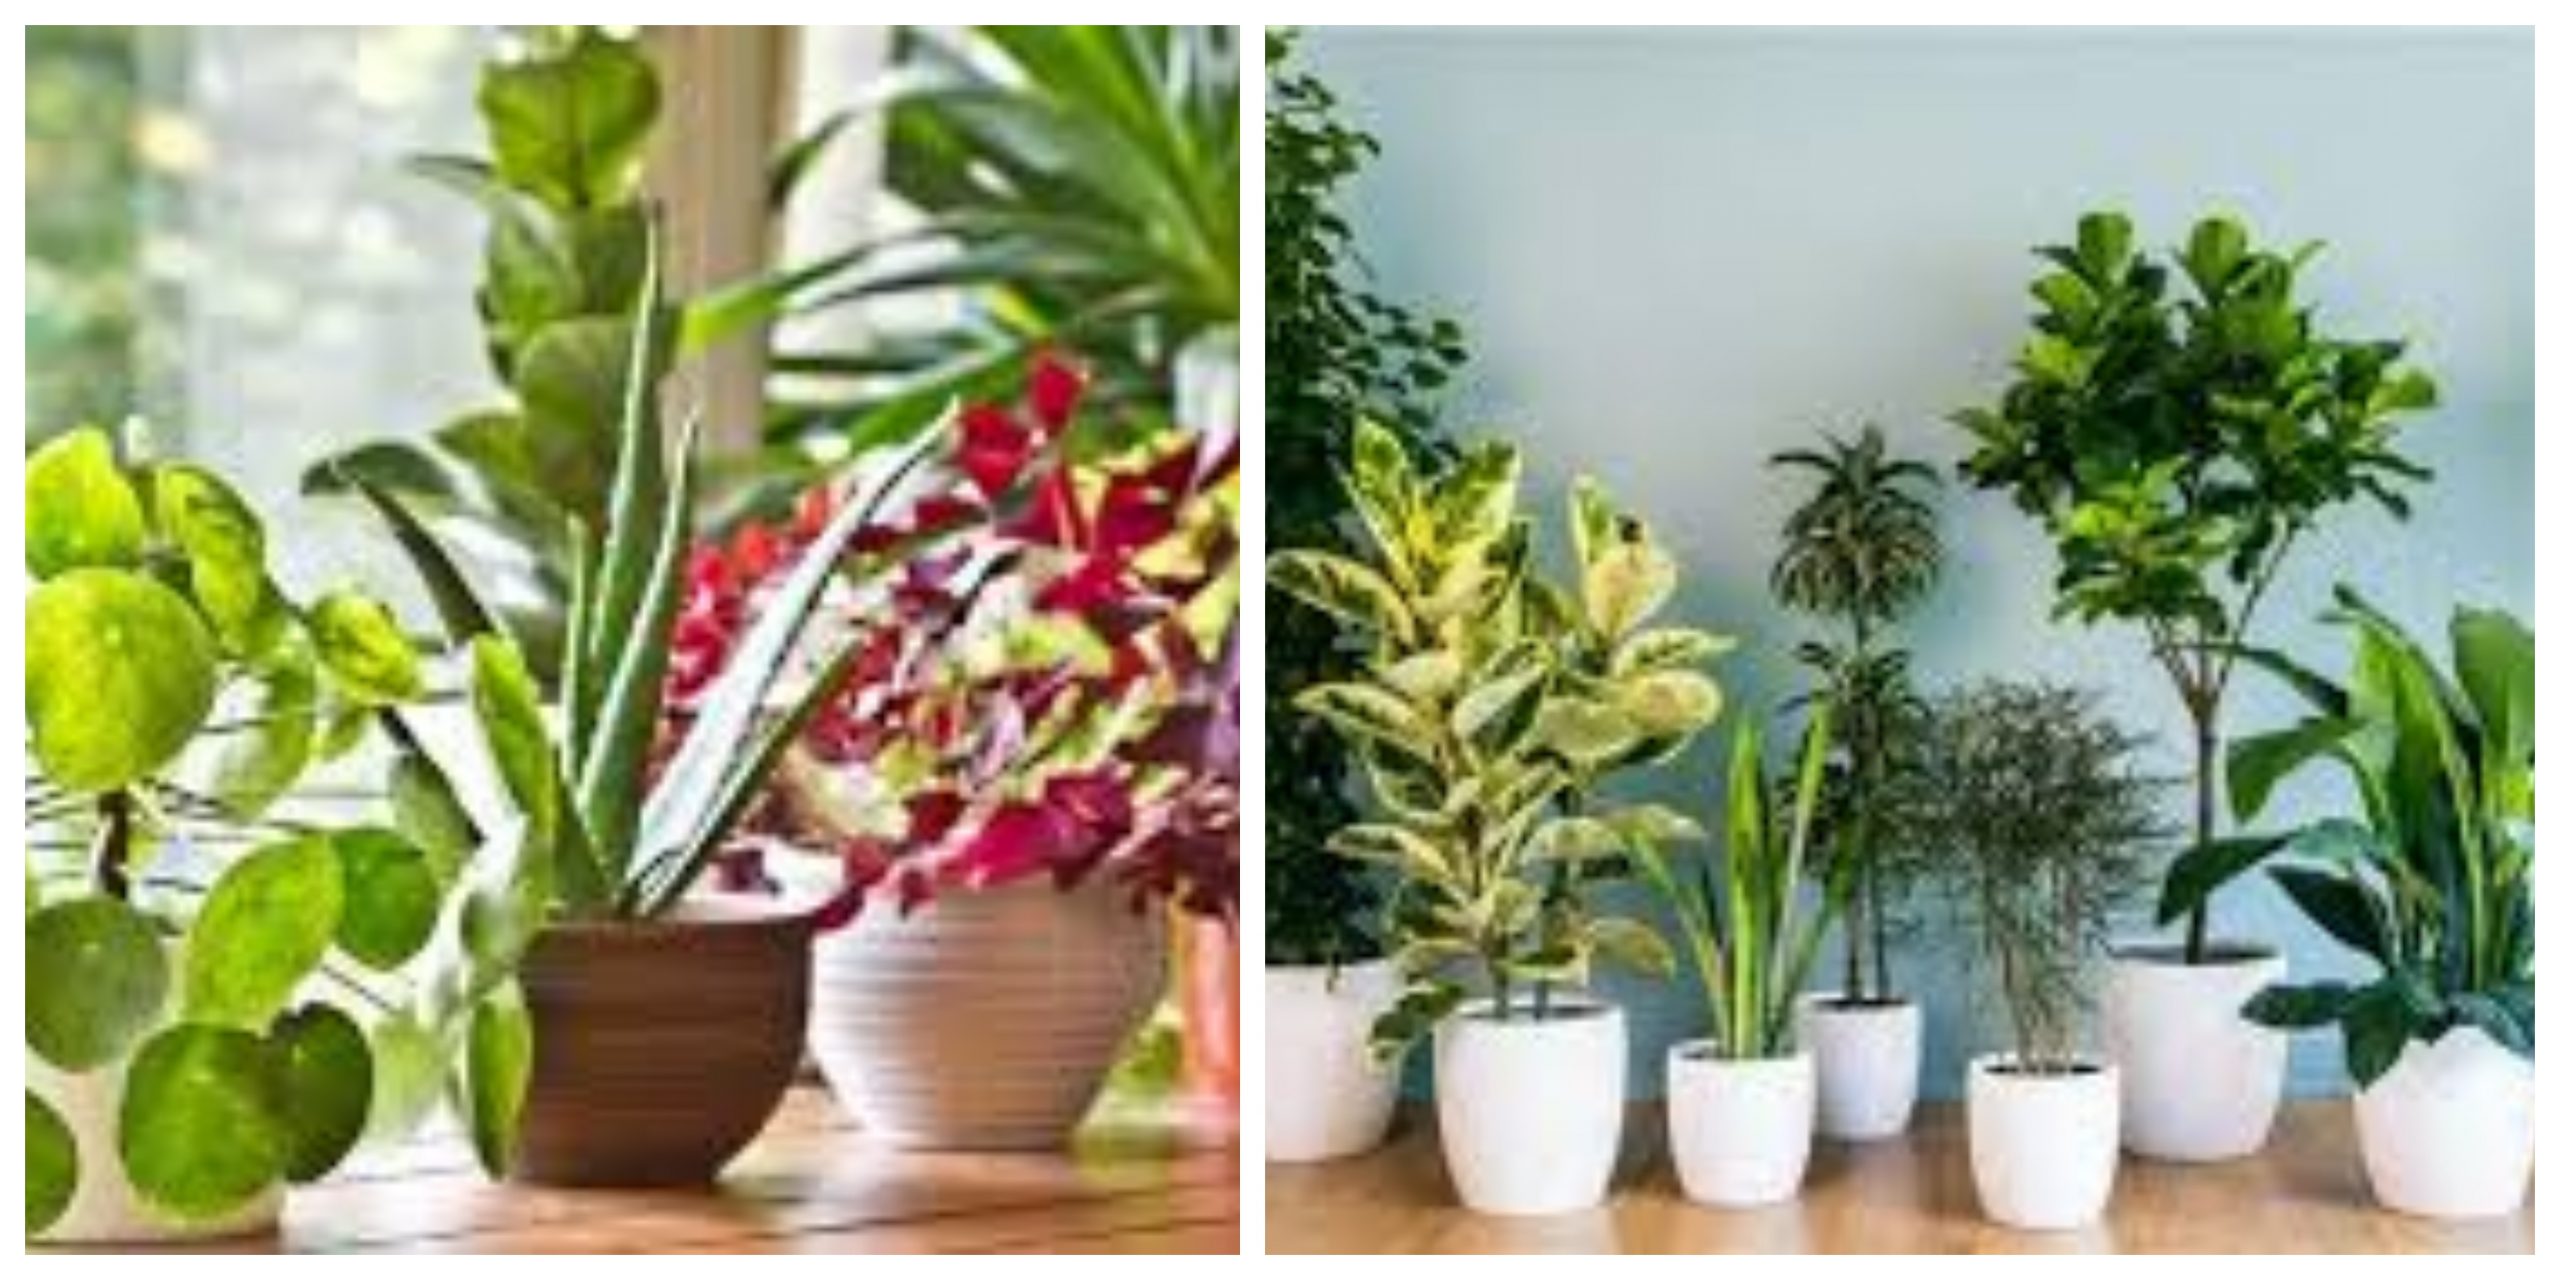  8 نباتات منزلية يمكنها أن تحقق لك فوائد صحية مذهلة